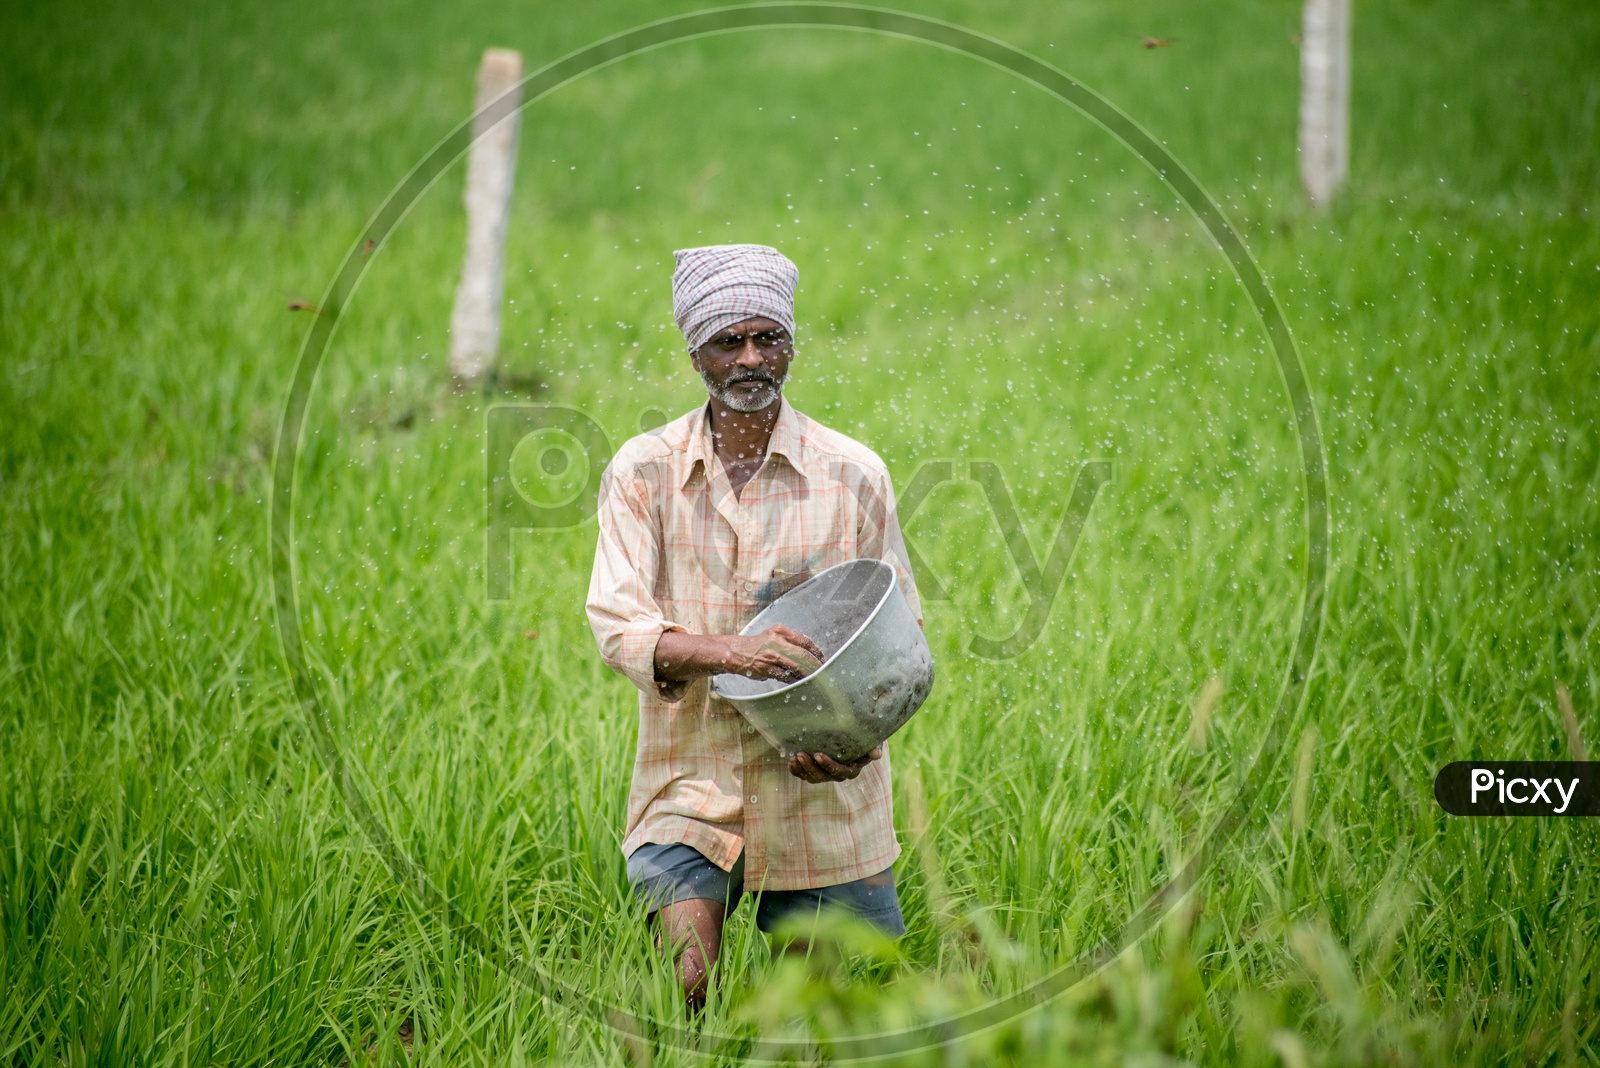 farmer sprinkling fertilizers in paddy fields